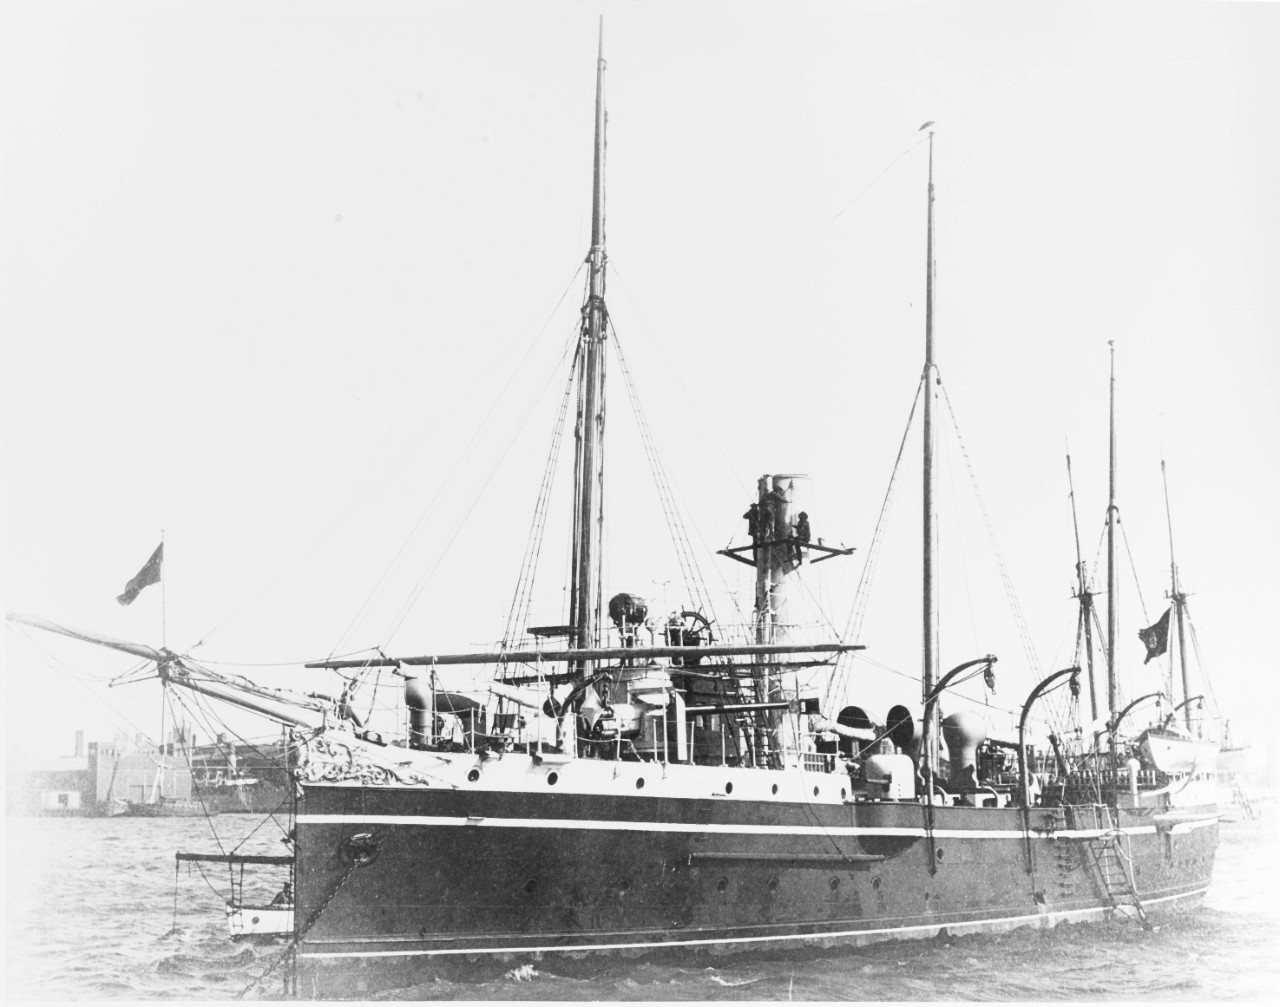 TIRADENTES (Brazilian Gunboat, 1892-1925)